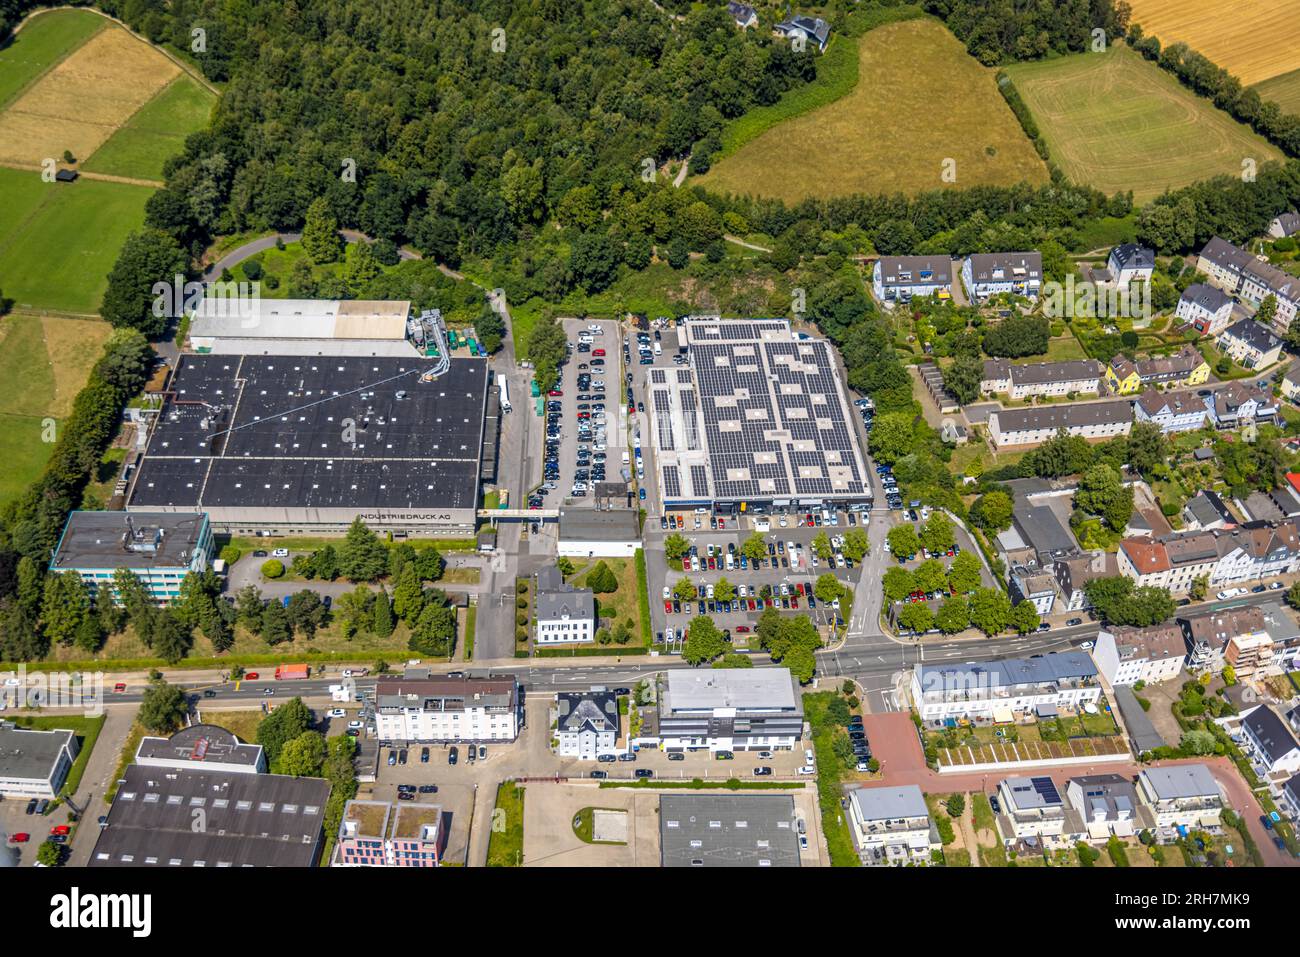 Aerial view, Verlag Beleke, Medienhaus Ruhr GmbH, Margreff Druck GmbH, BOB Automobile - Renault car dealership with solar panel, Werden, Essen, Ruhr a Stock Photo